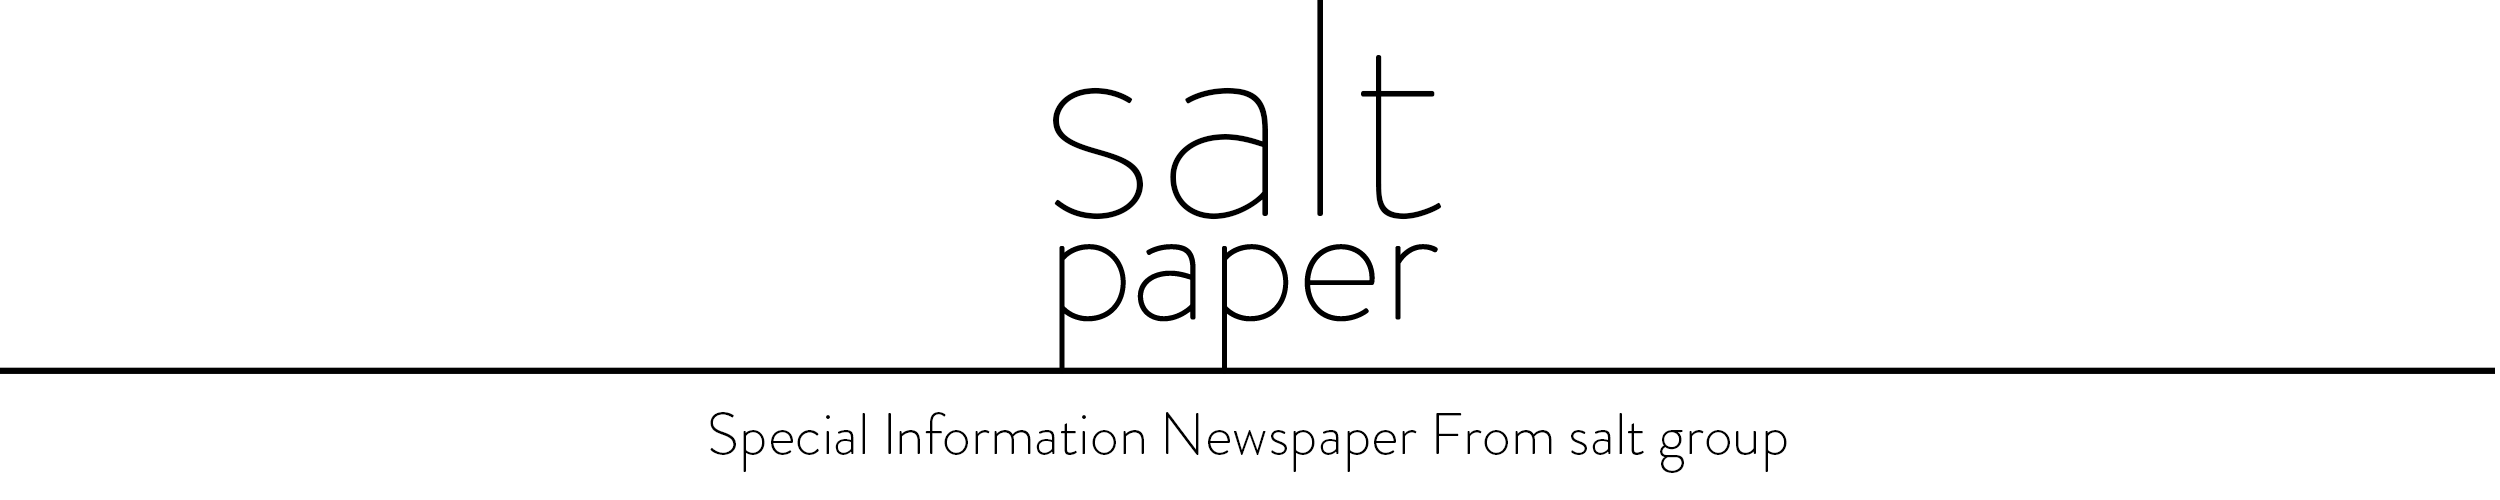 salt paper - Special information newsletter from salt group